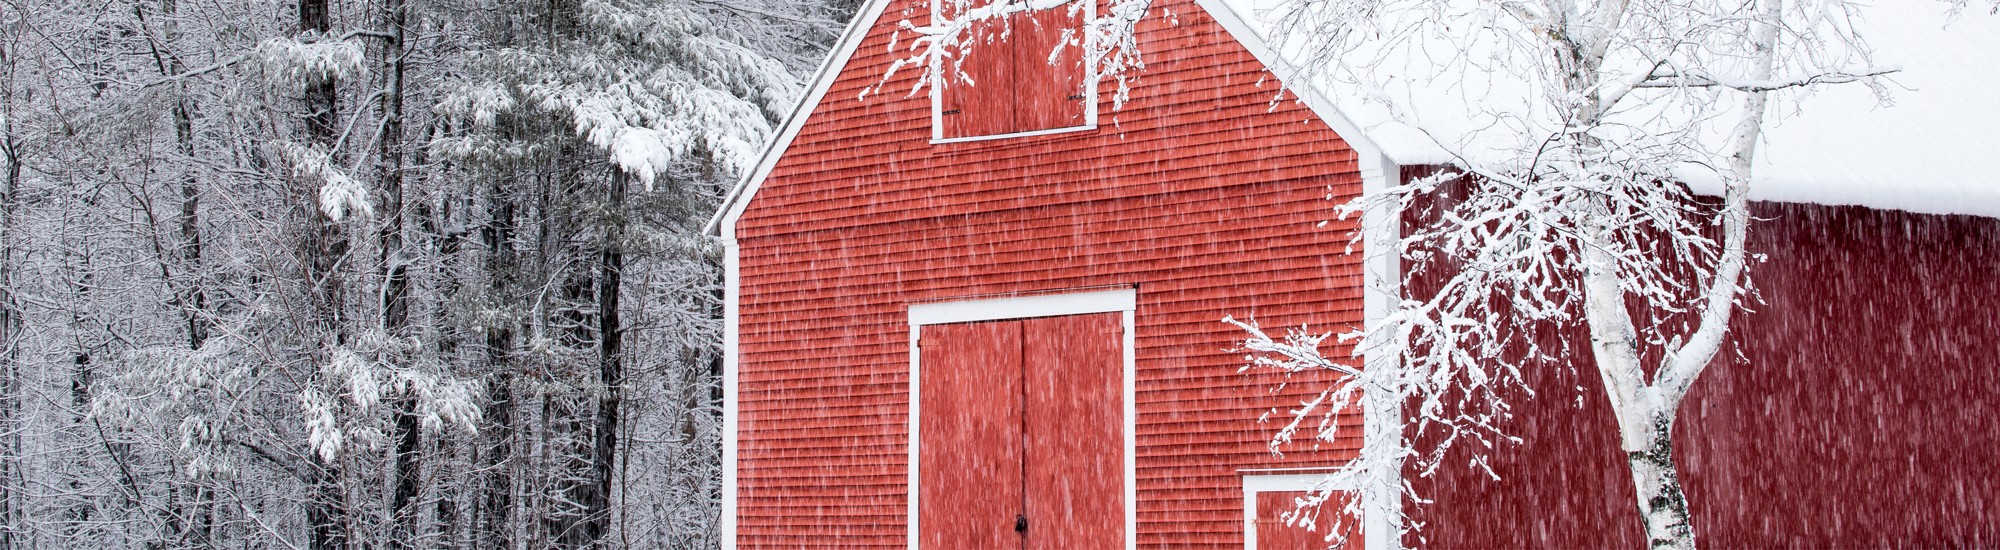 Winter Knapps Barn in Snow Storm